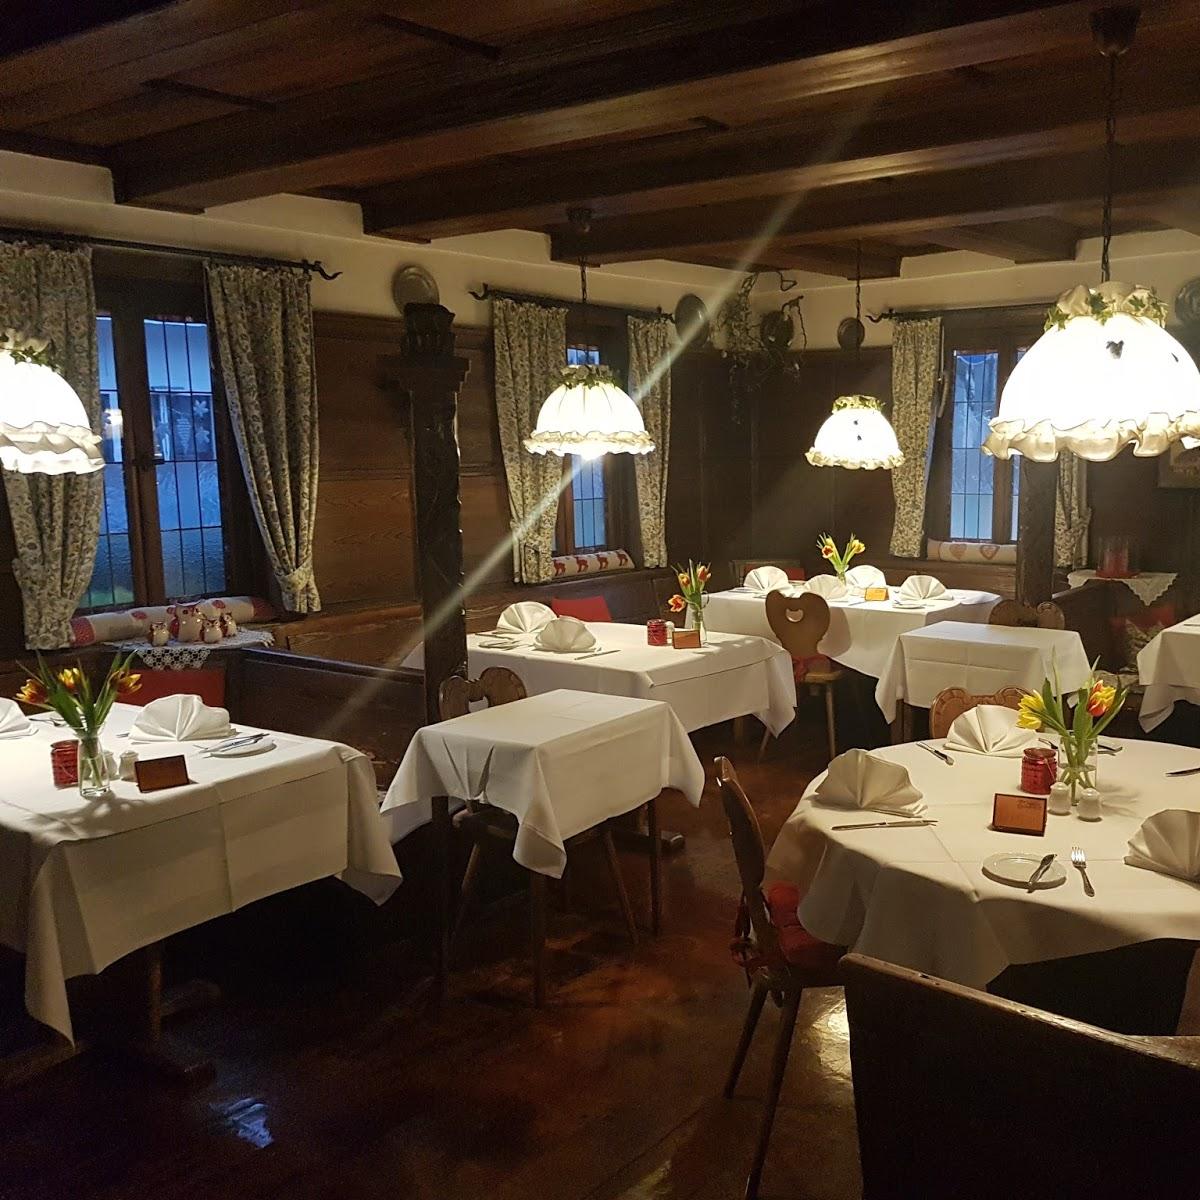 Restaurant "Weinstube Hotel Idler" in  Remstal